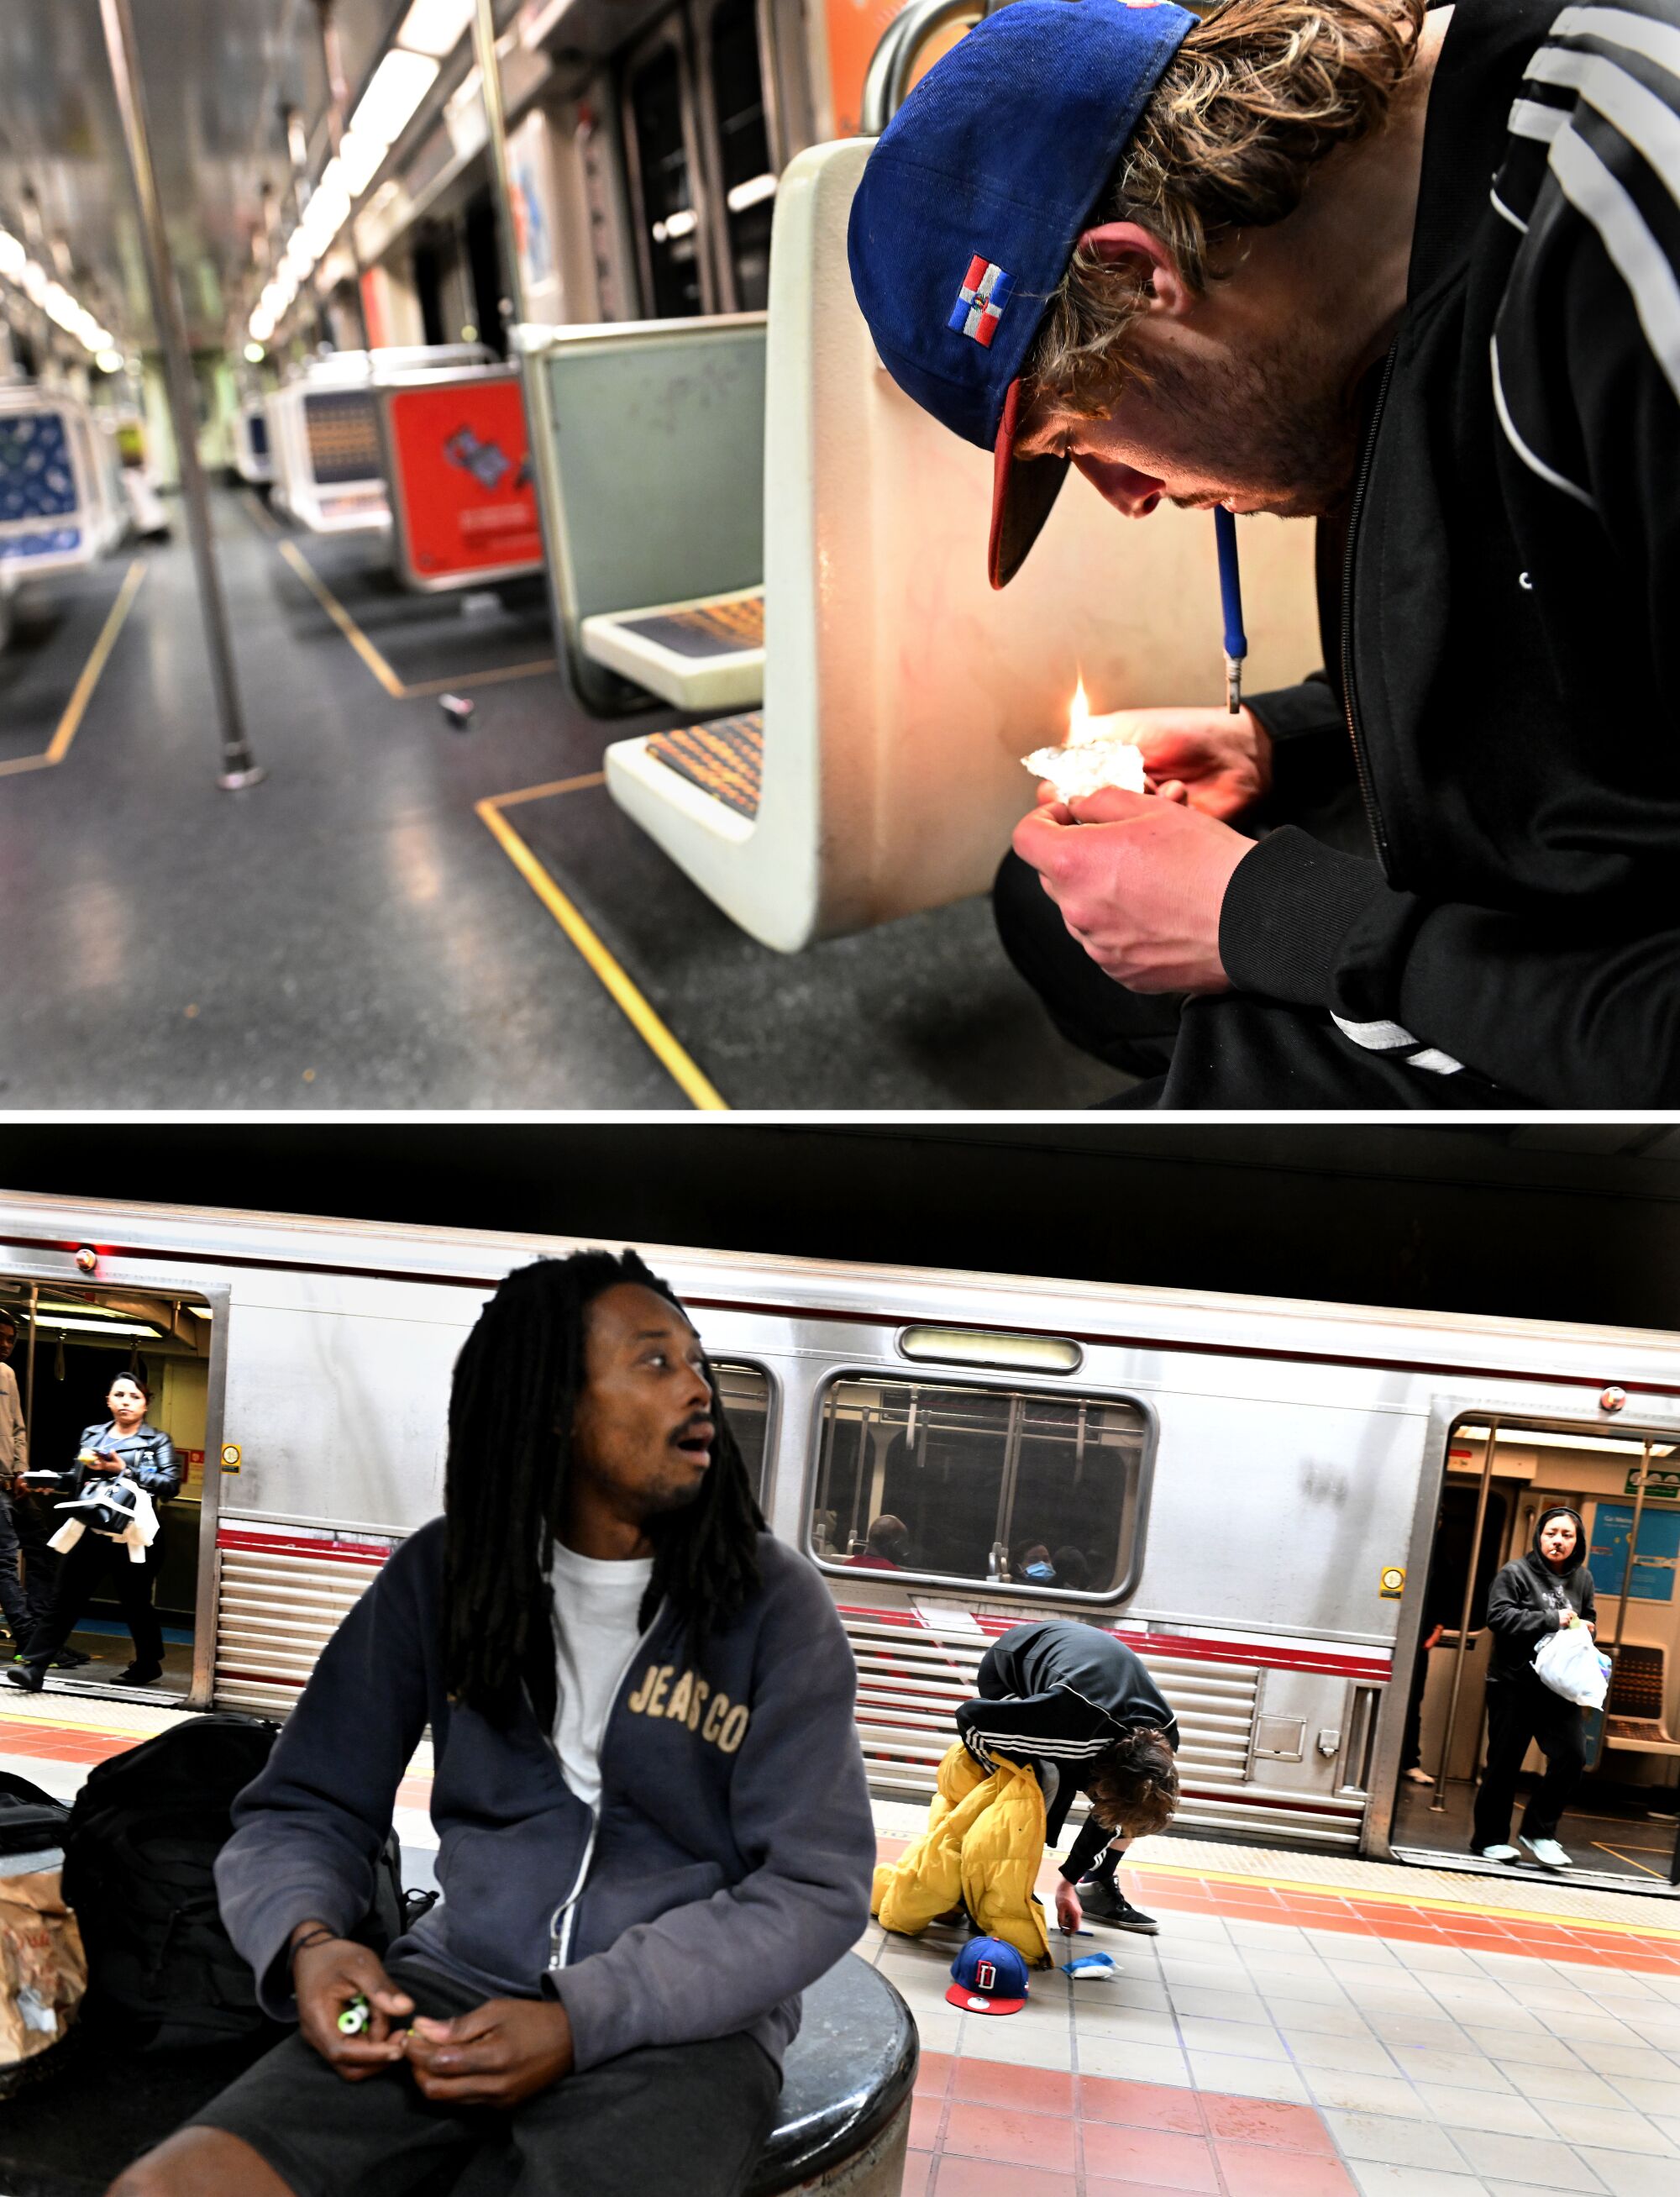 상단 이미지에서 청년은 알루미늄 호일에서 물질을 피웁니다.  그리고 그 아래에는 기차가 도착할 때 한 남자가 지하철 벤치에 앉아 있습니다.